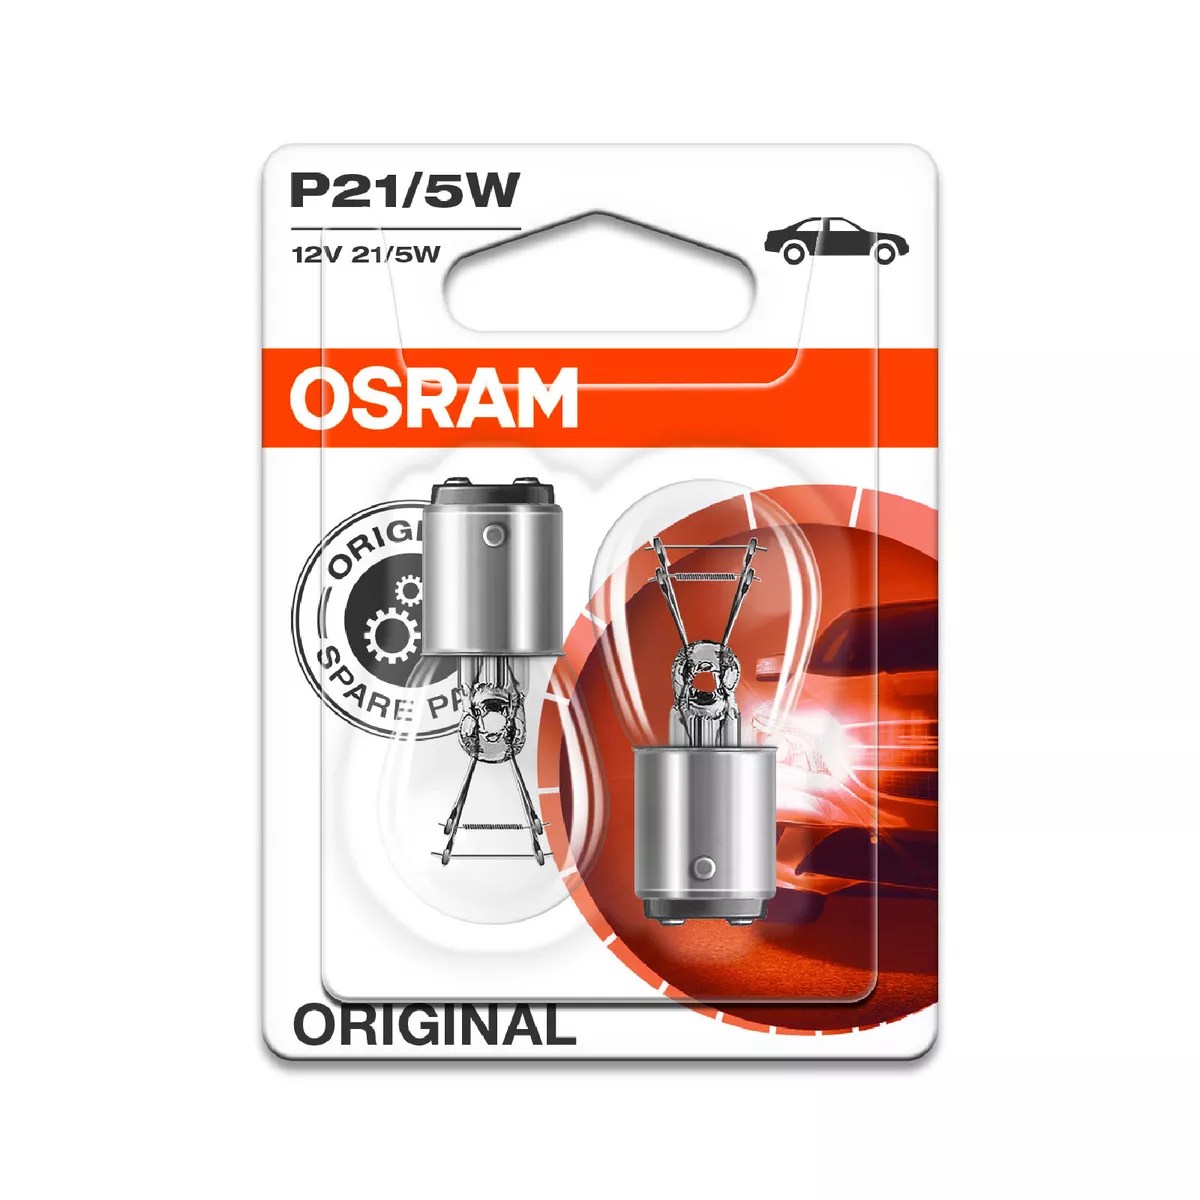 Купить лампа накаливания OSRAM P21/5W Original 12V 21/5W, 2шт